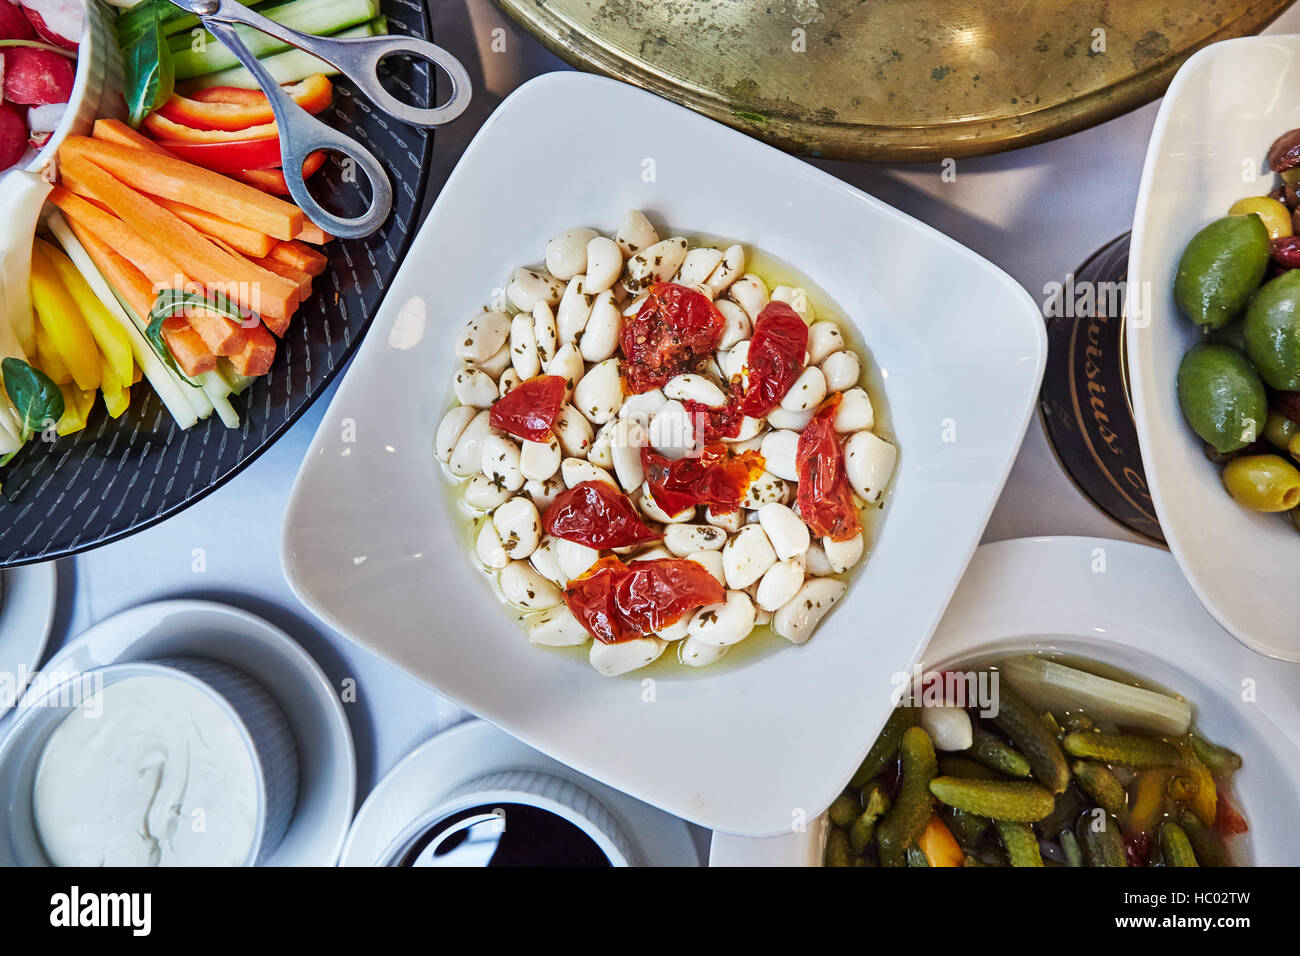 Brunch italiano, selezione di antipasti dal buffet come verdure tagliate, aglio, olive, sottaceti e salse Foto Stock